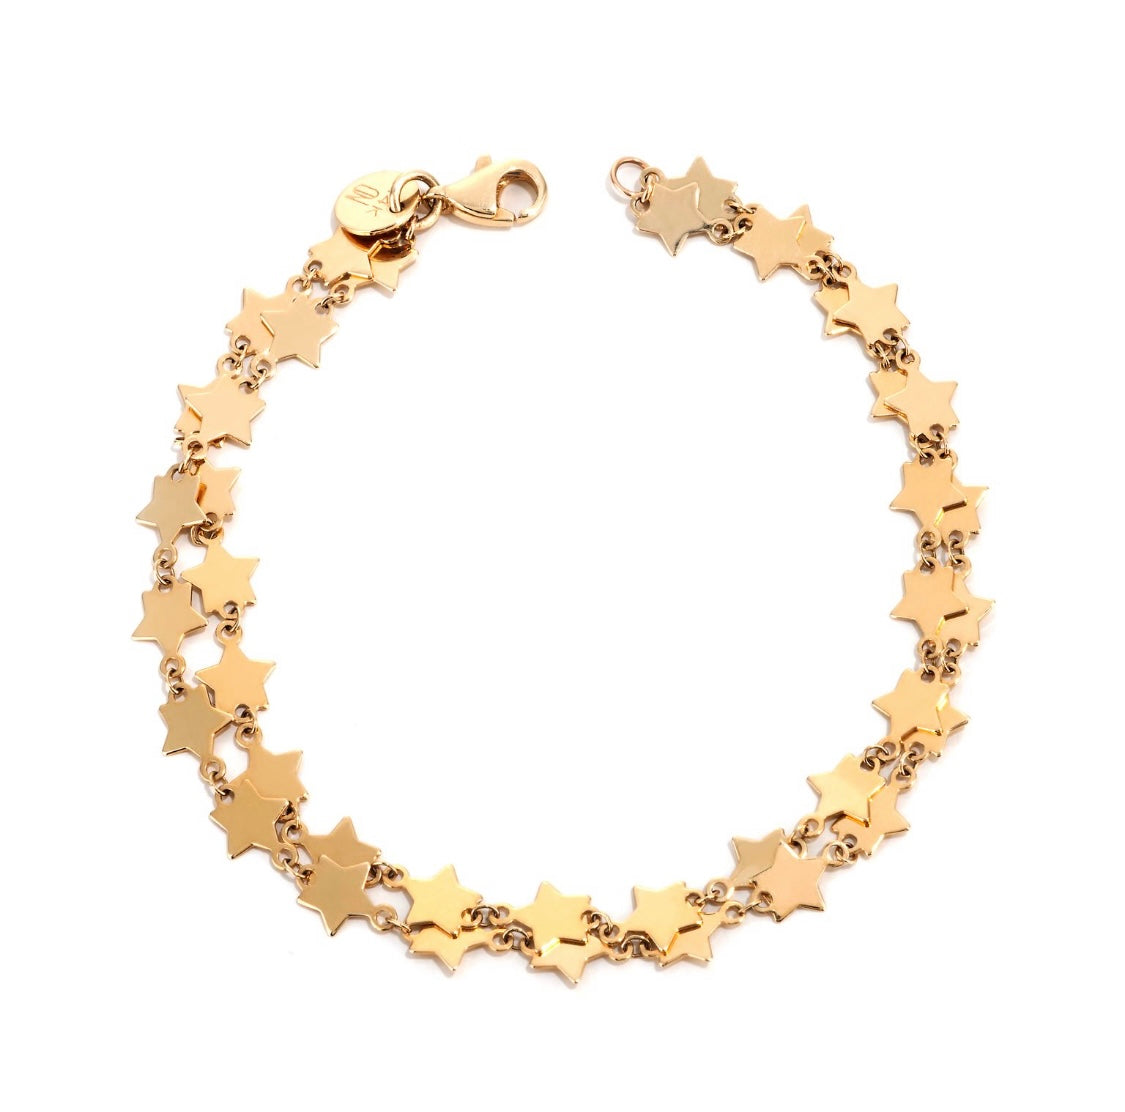 Golden Star Bracelet